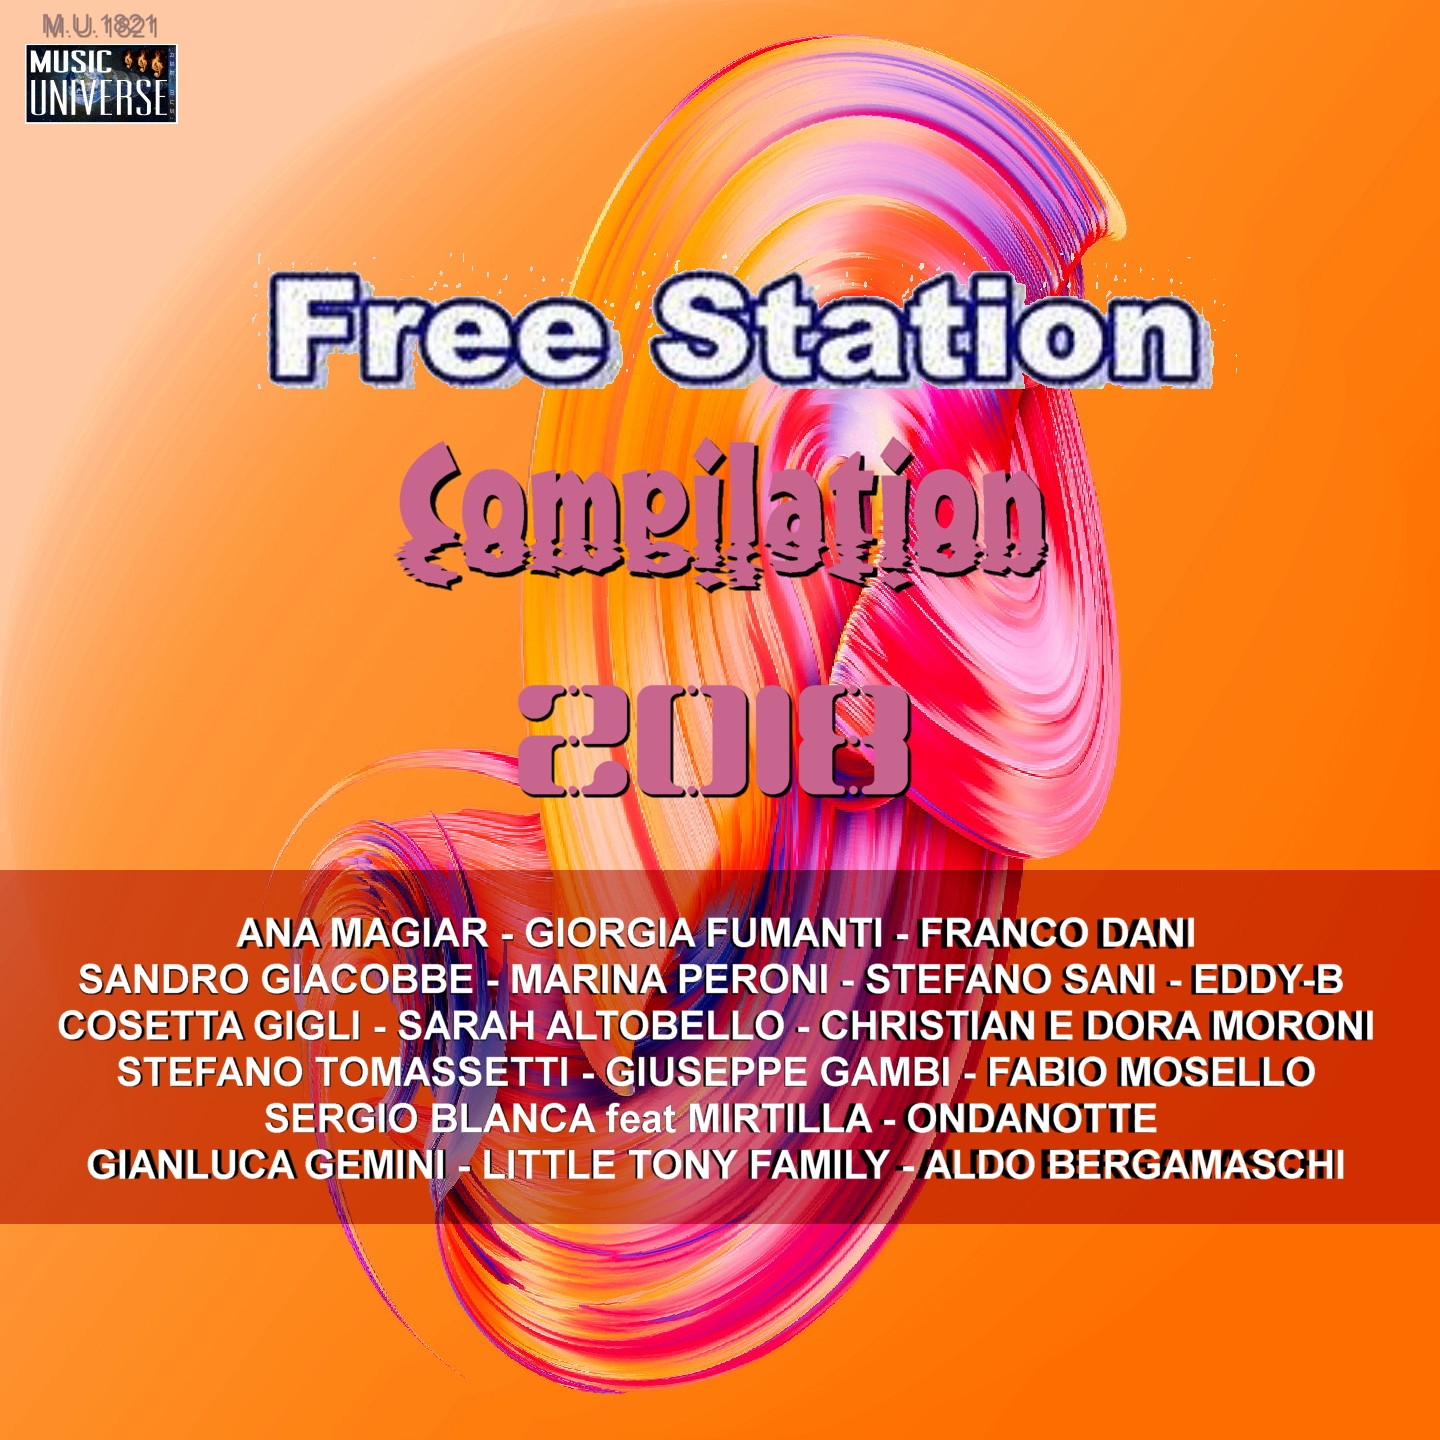 Freestation compilation 2018